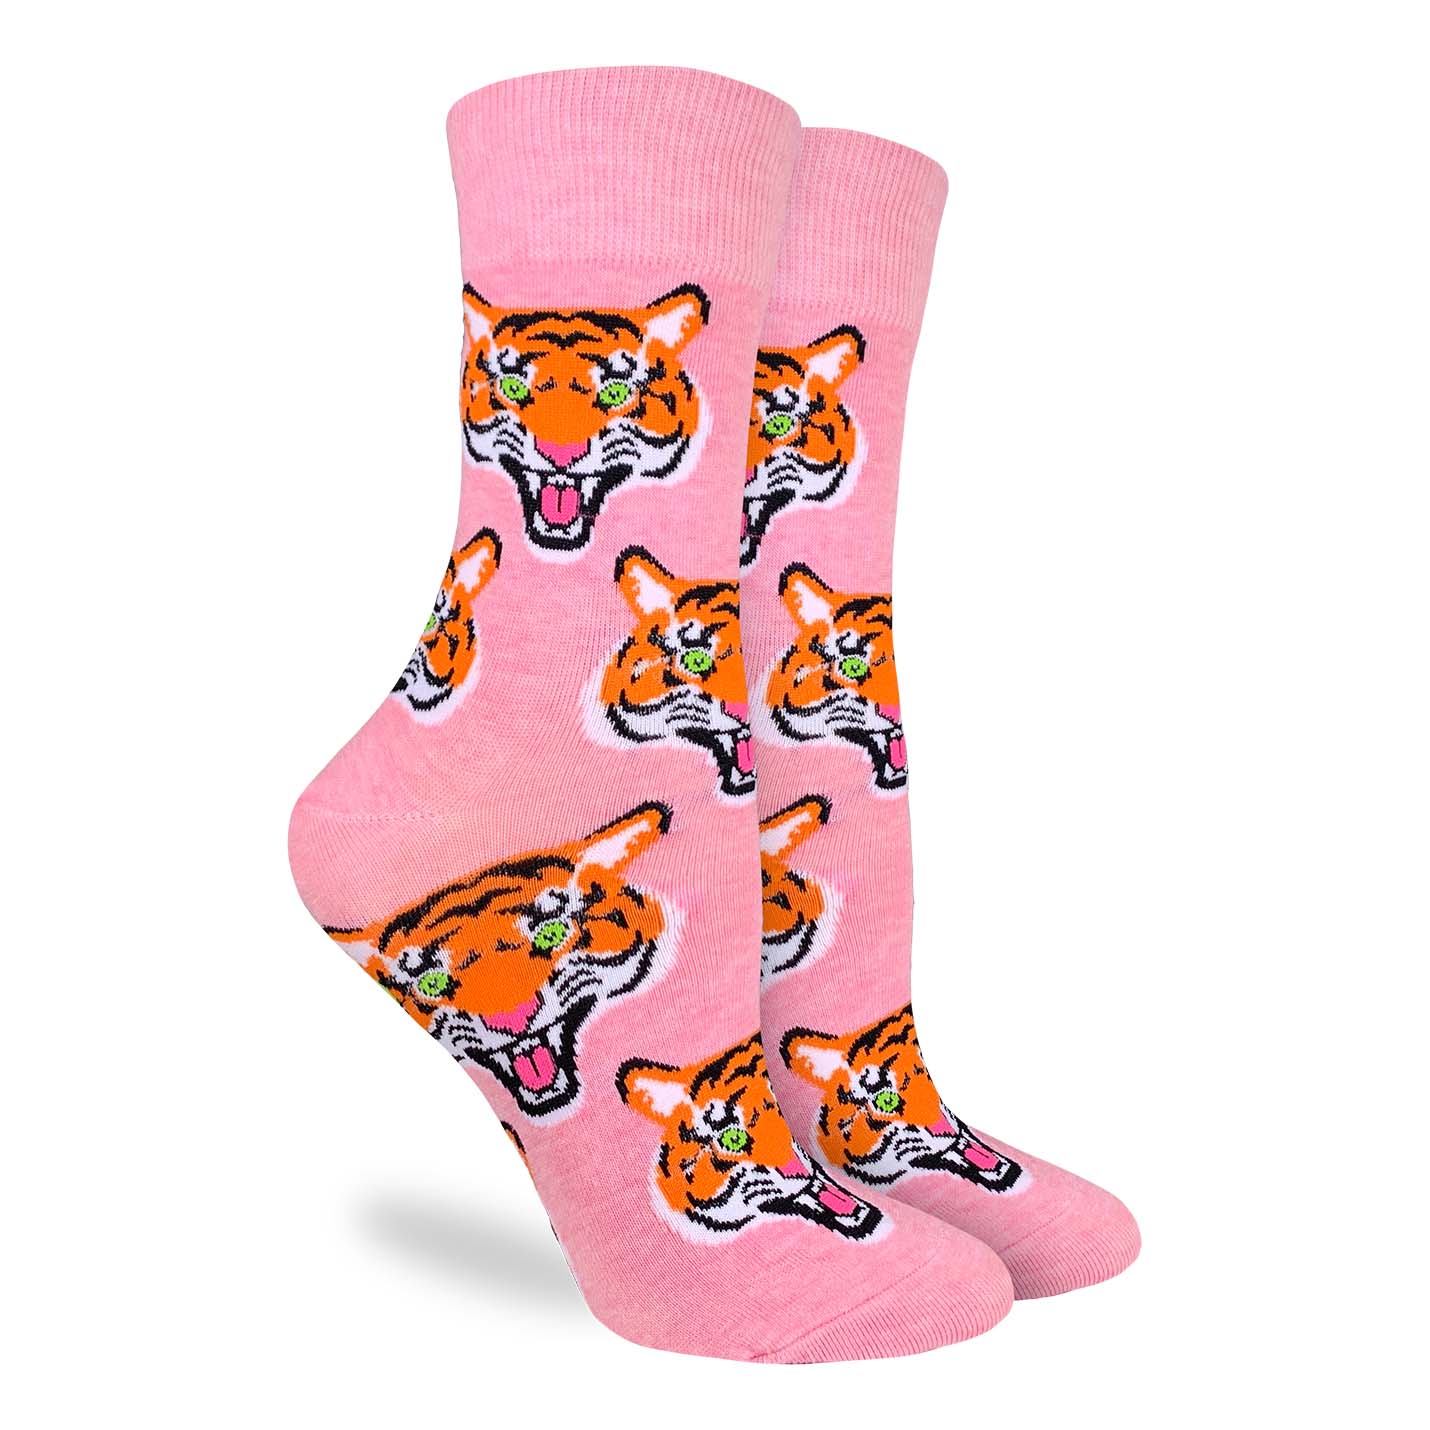 Good Luck Sock - Women's Tiger Socks